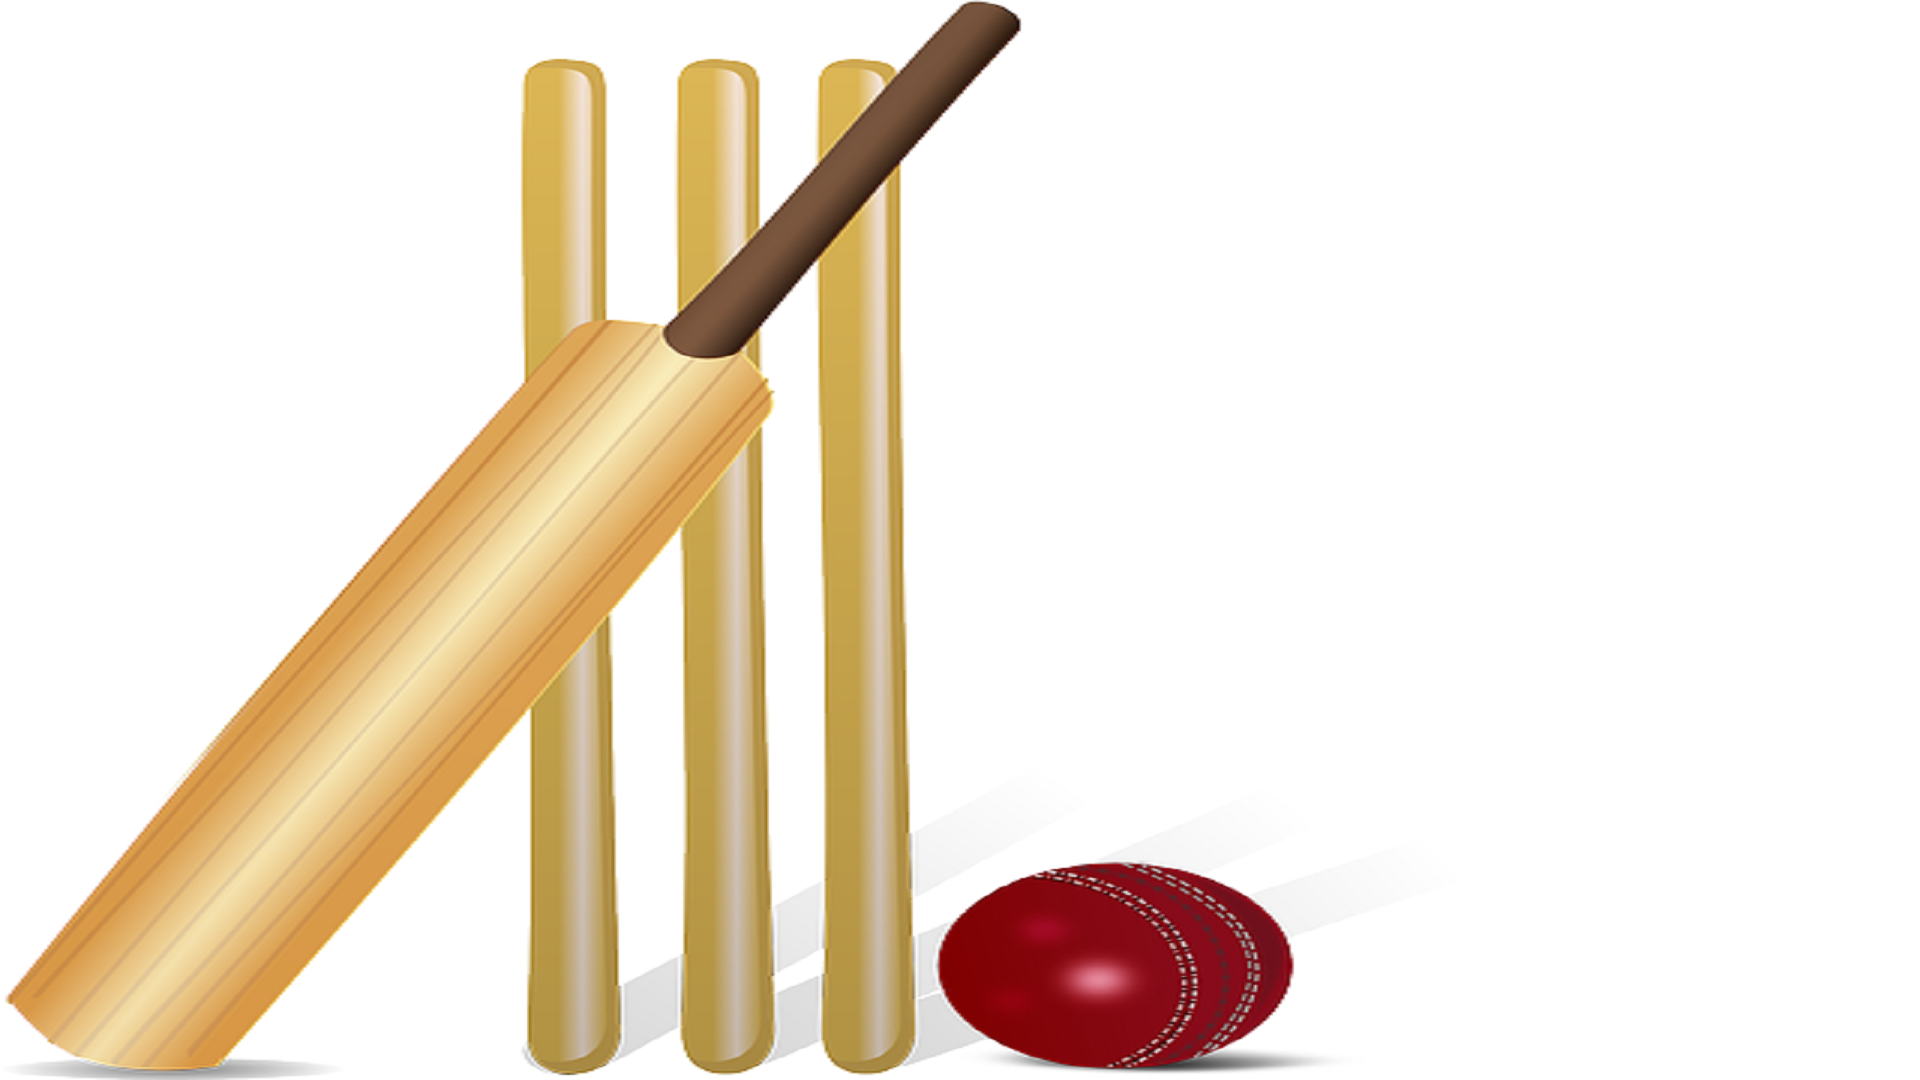 Cricket bat. Крикет мяч и бита. Бита для крикета. Бита на прозрачном фоне. Bat and ball